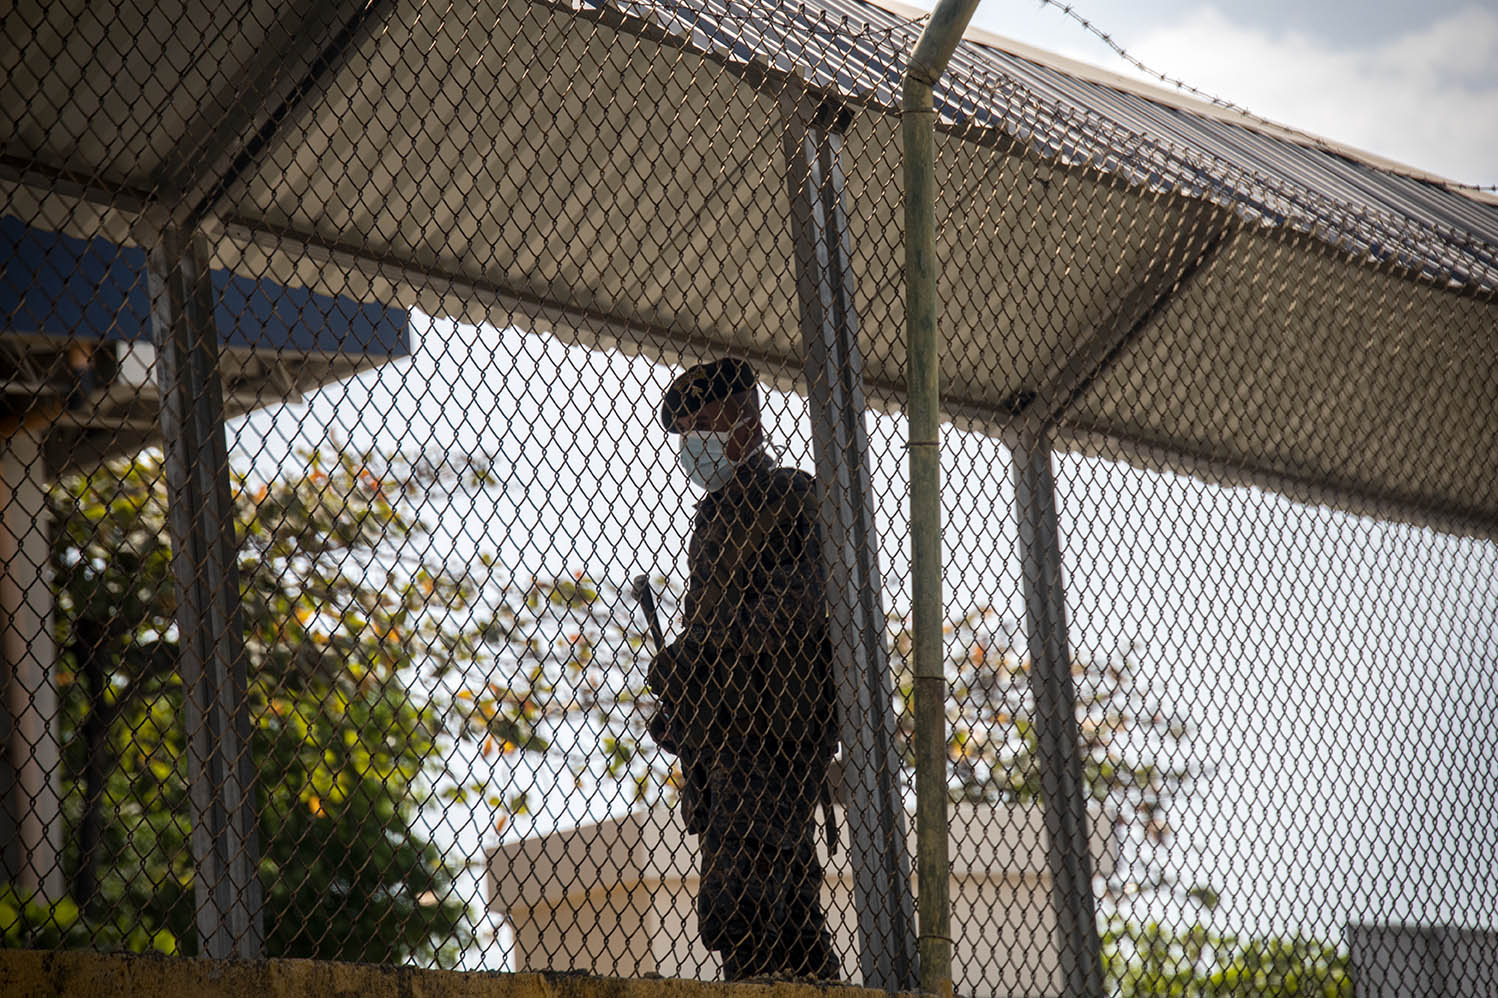 Un soldado usa mascarilla para protegerse del contagio del COVID19 mientras vigila el puente fronterizo de Tecún Umán.